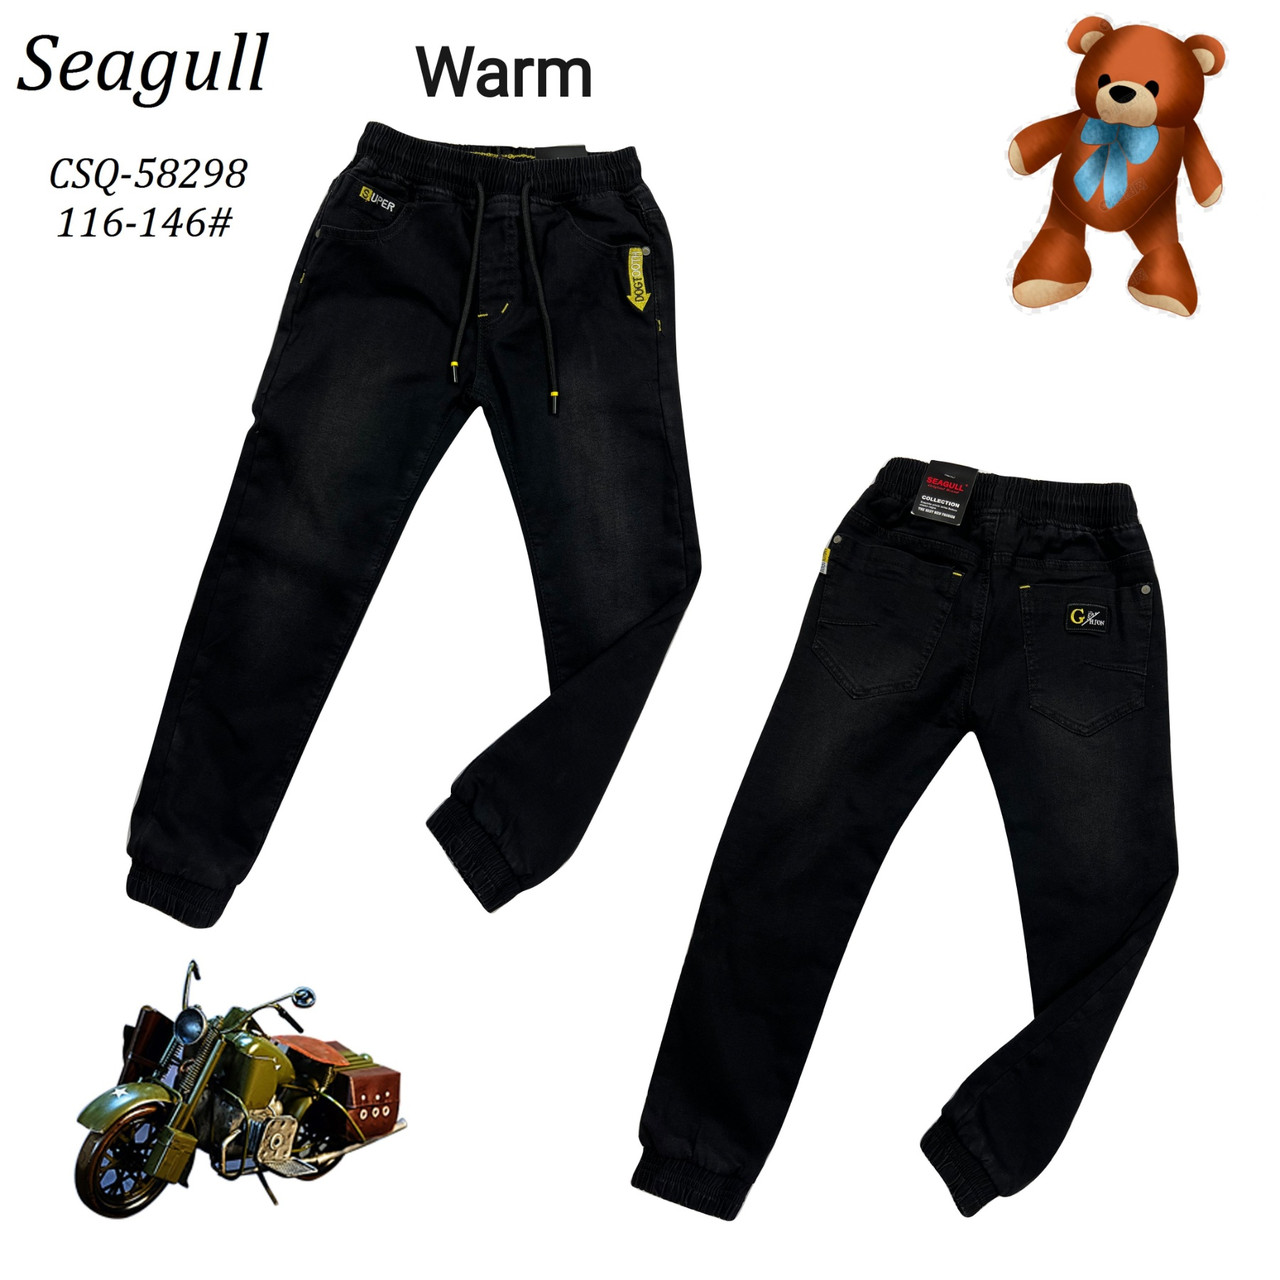 Утеплені джинси для хлопчиків оптом, Seagull, розміри 116-146, арт. CSQ-58298